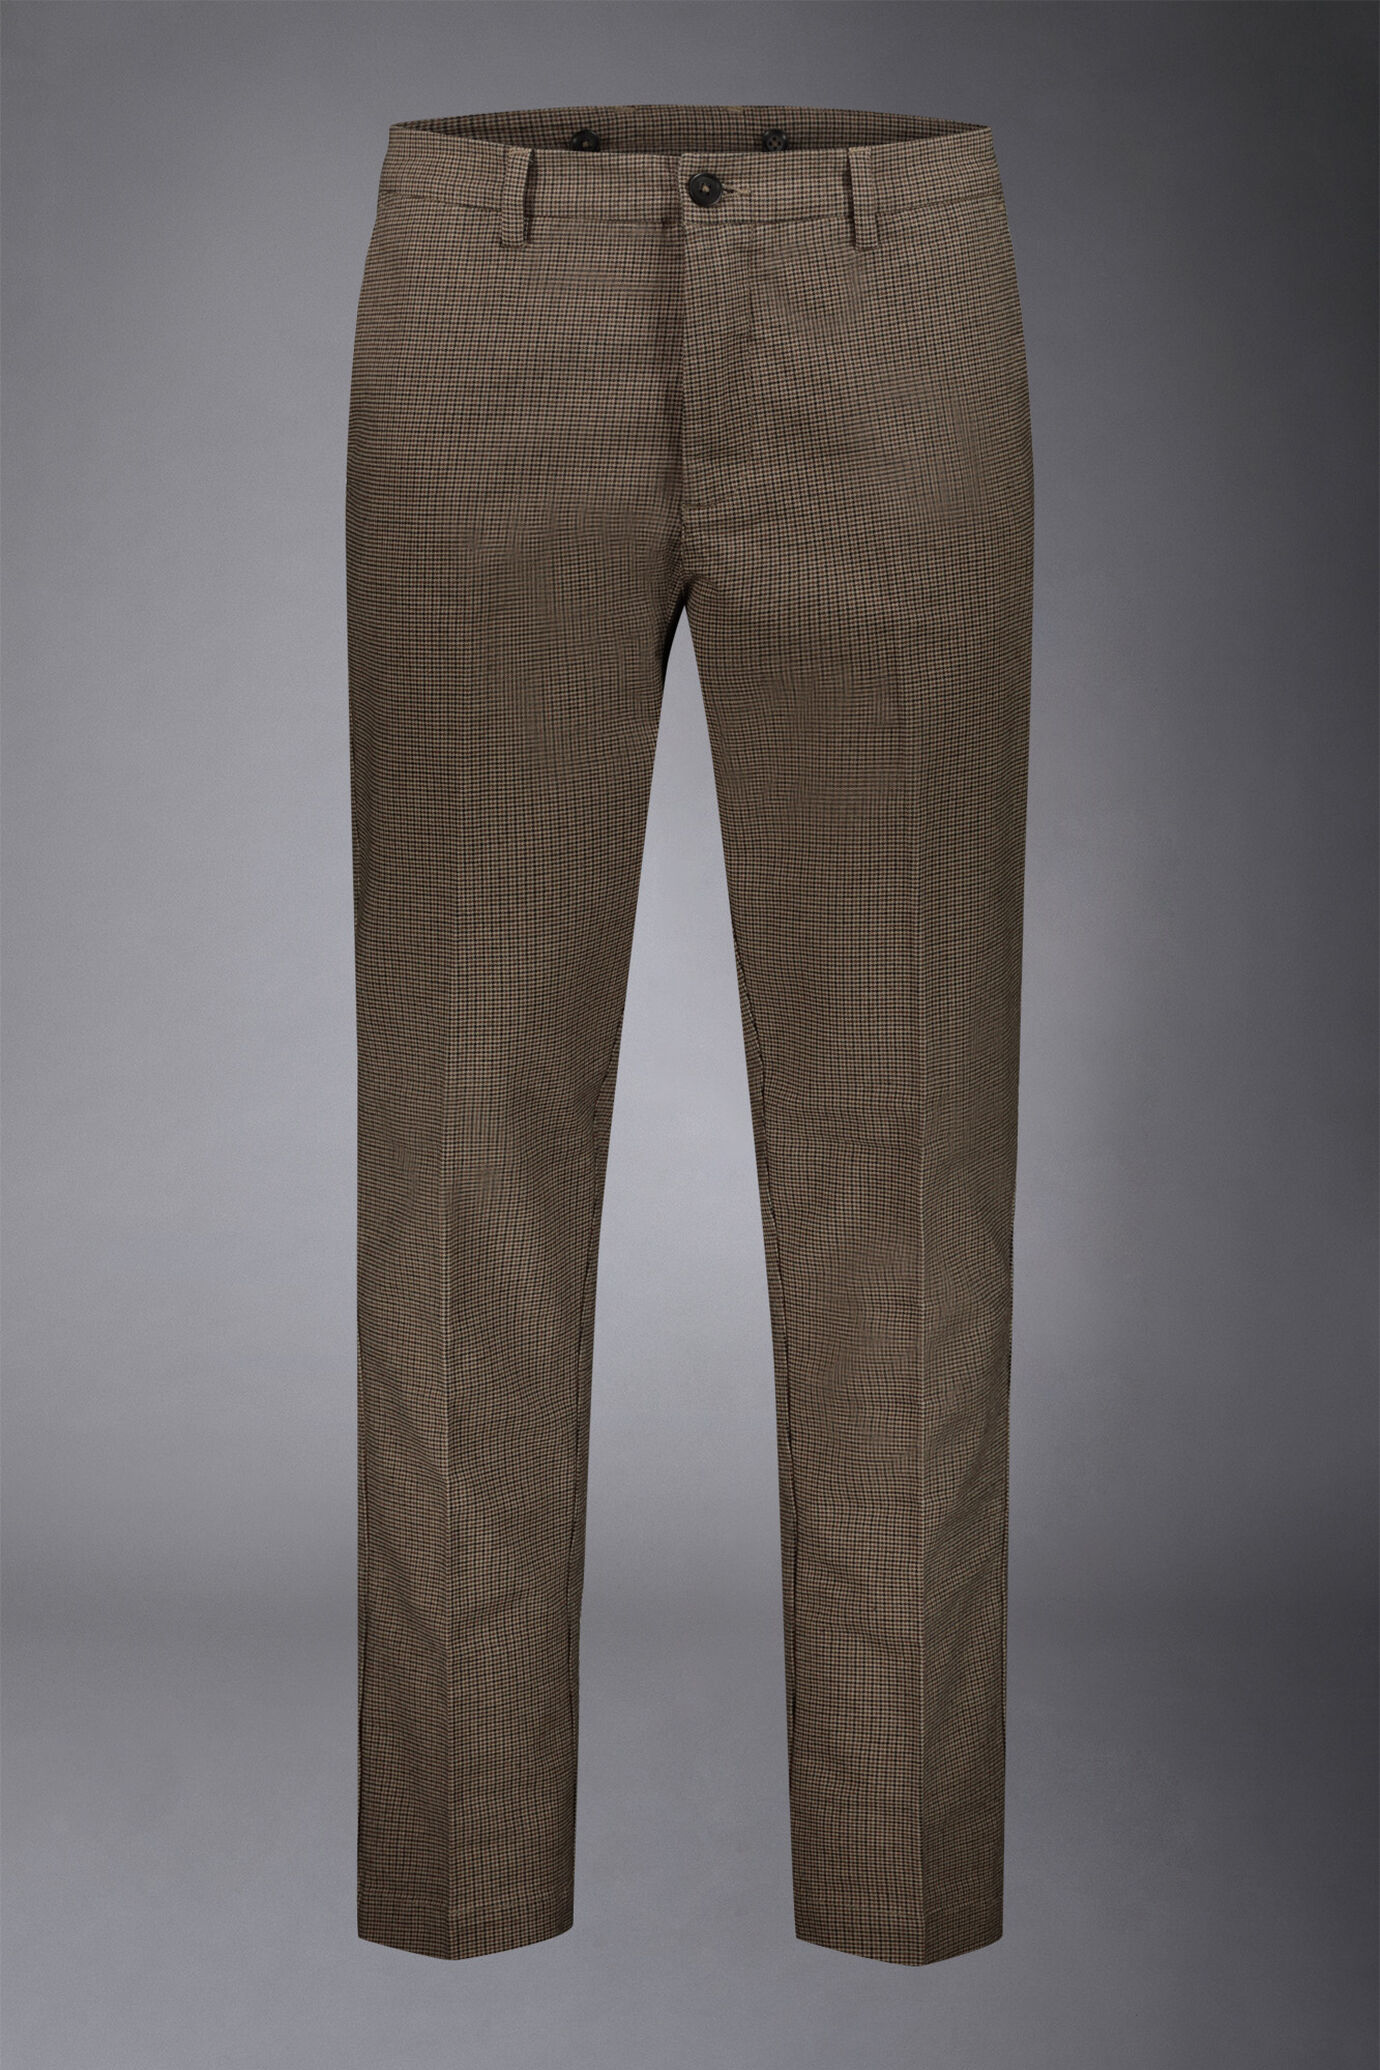 Pantalone chino uomo tessuto in cotone mano lana pied de poule regular fit image number 4